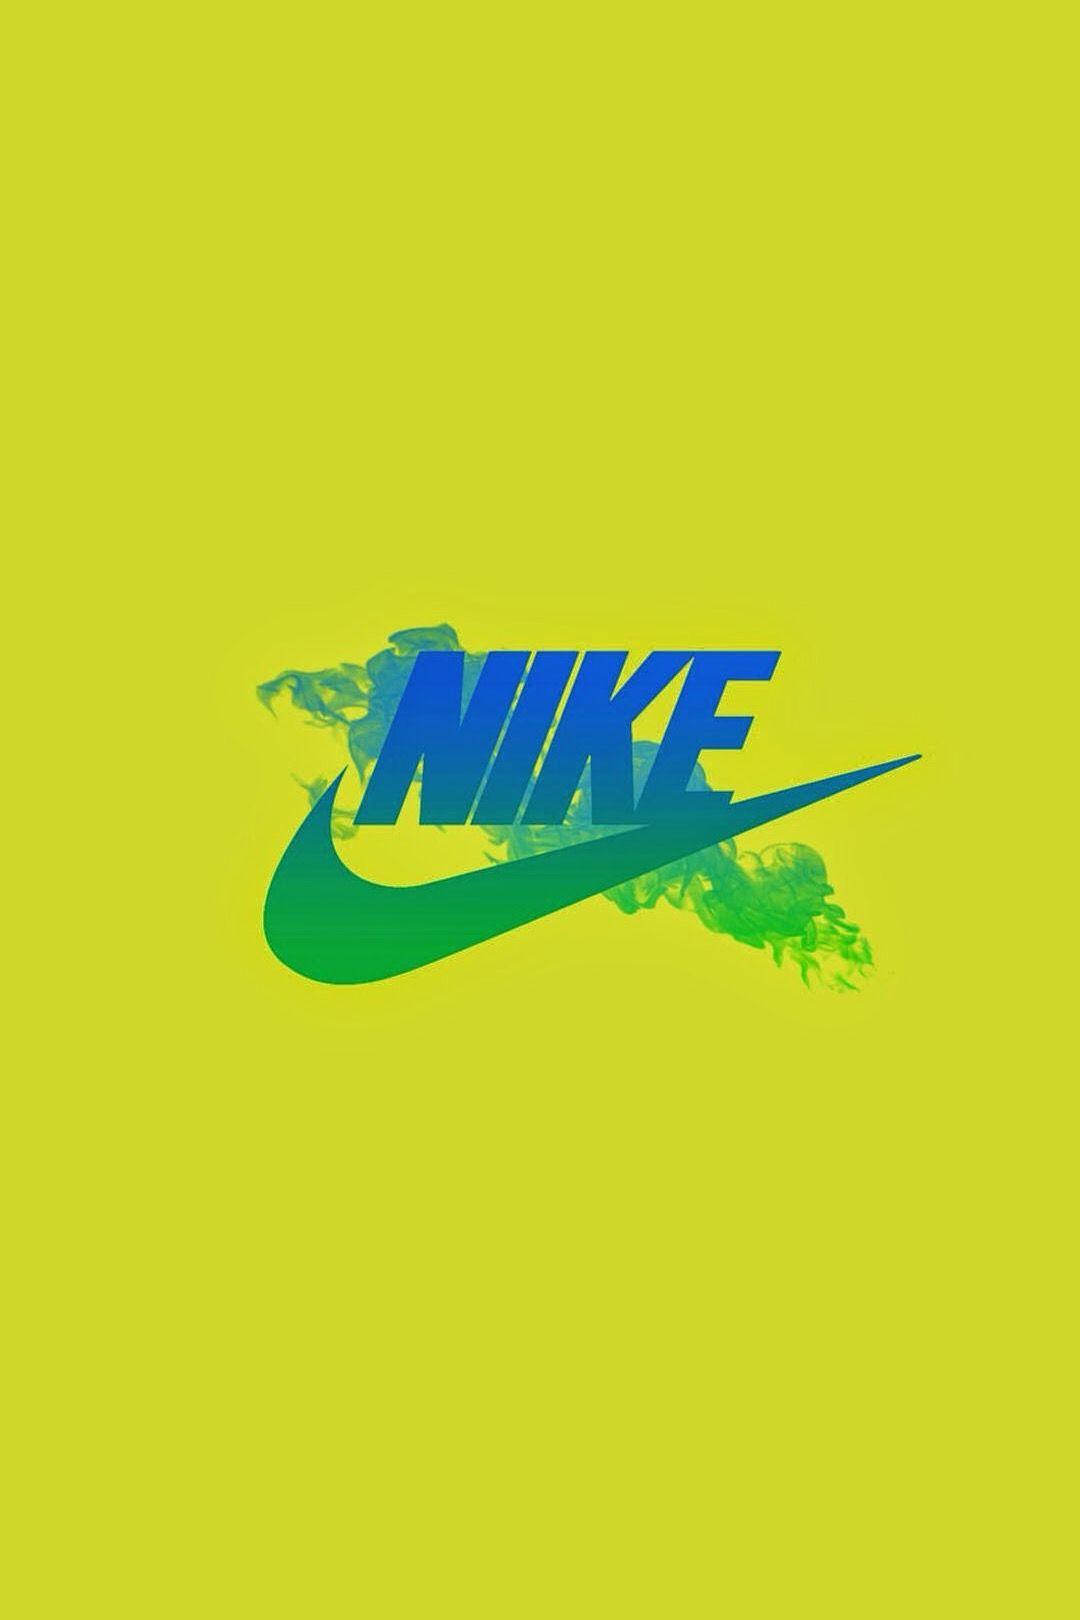 Yellow Nike Logo